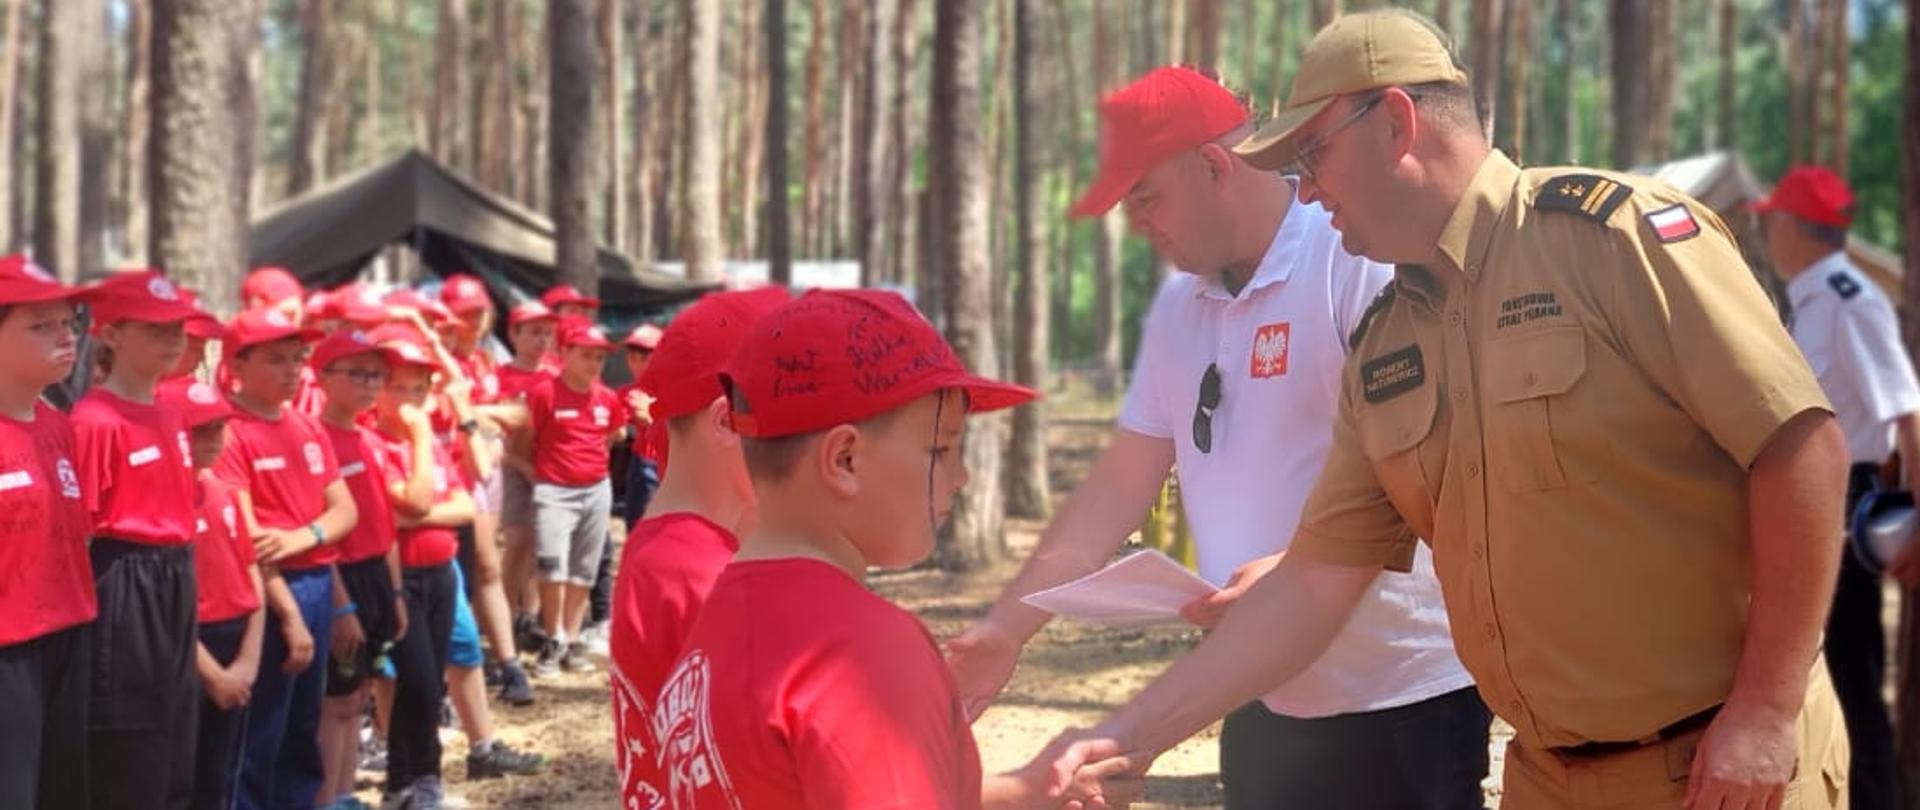 w lesie, strażak i mężczyzna w białej koszulce i czerwoinej czapeczce wręczają dyplomy druhom młodzieżowych drużym pożarniczych